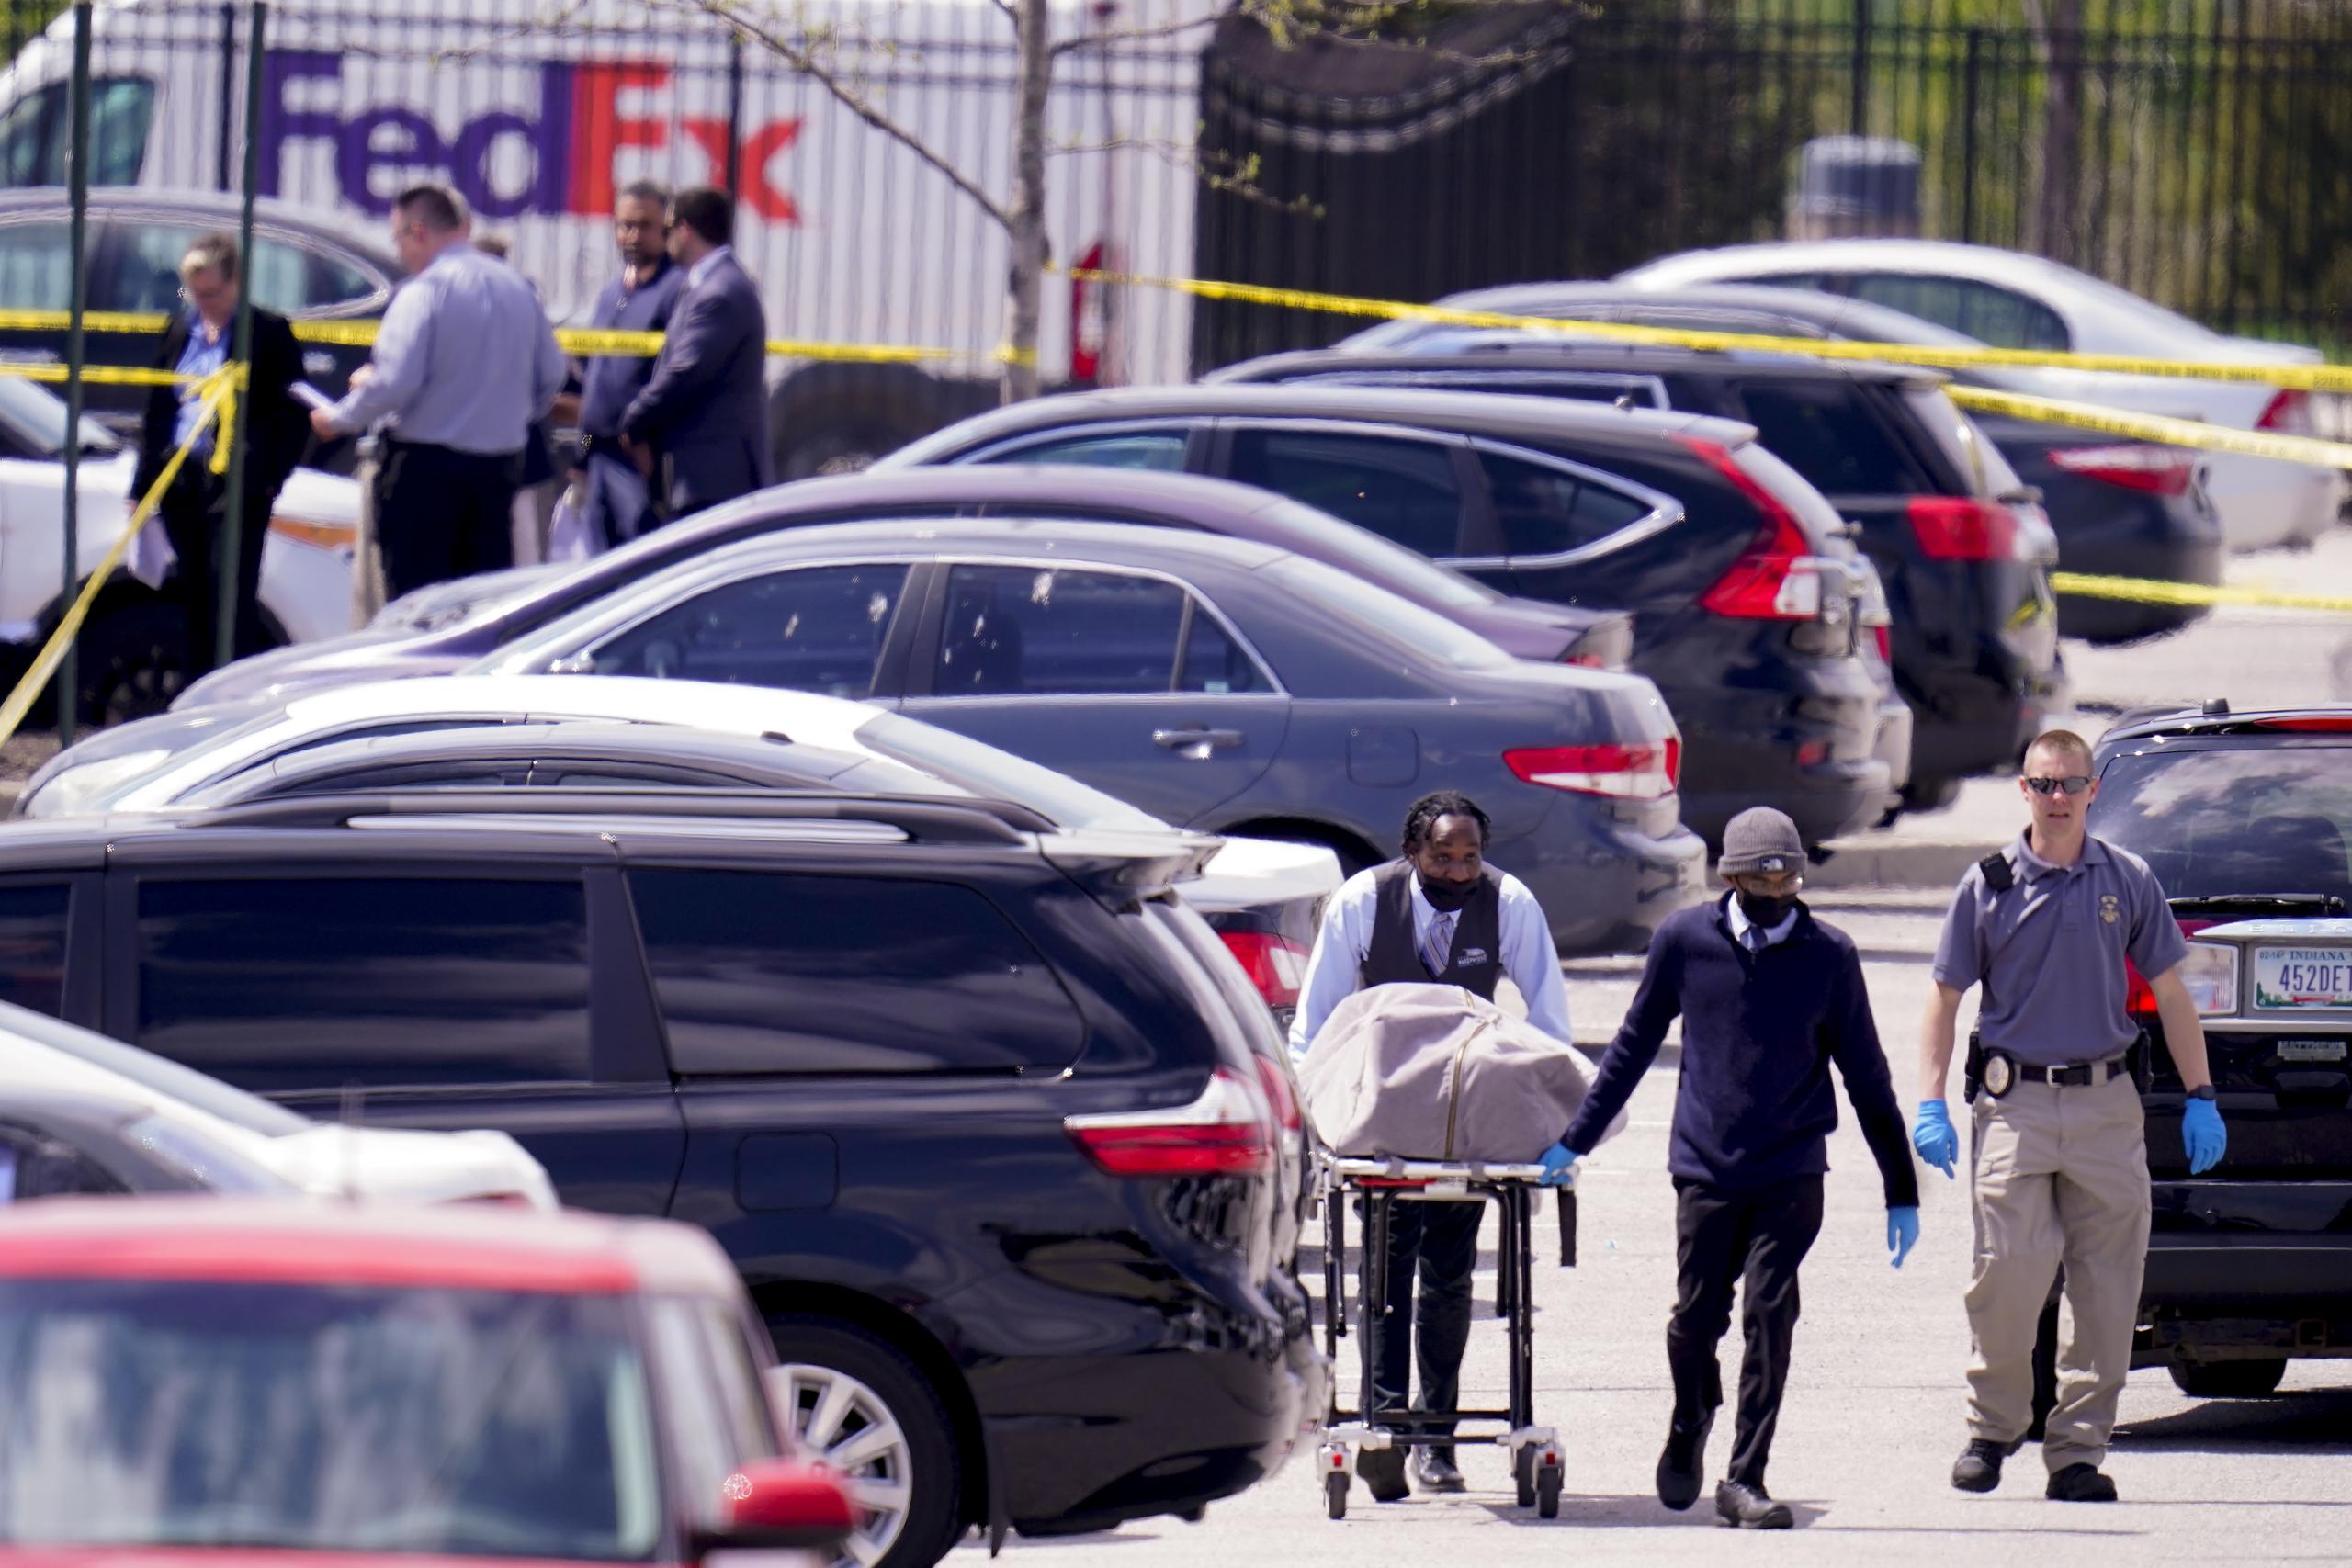 Brandon Scott Hole comenzó a disparar contra personas al azar en el estacionamiento de las instalaciones de FedEx.